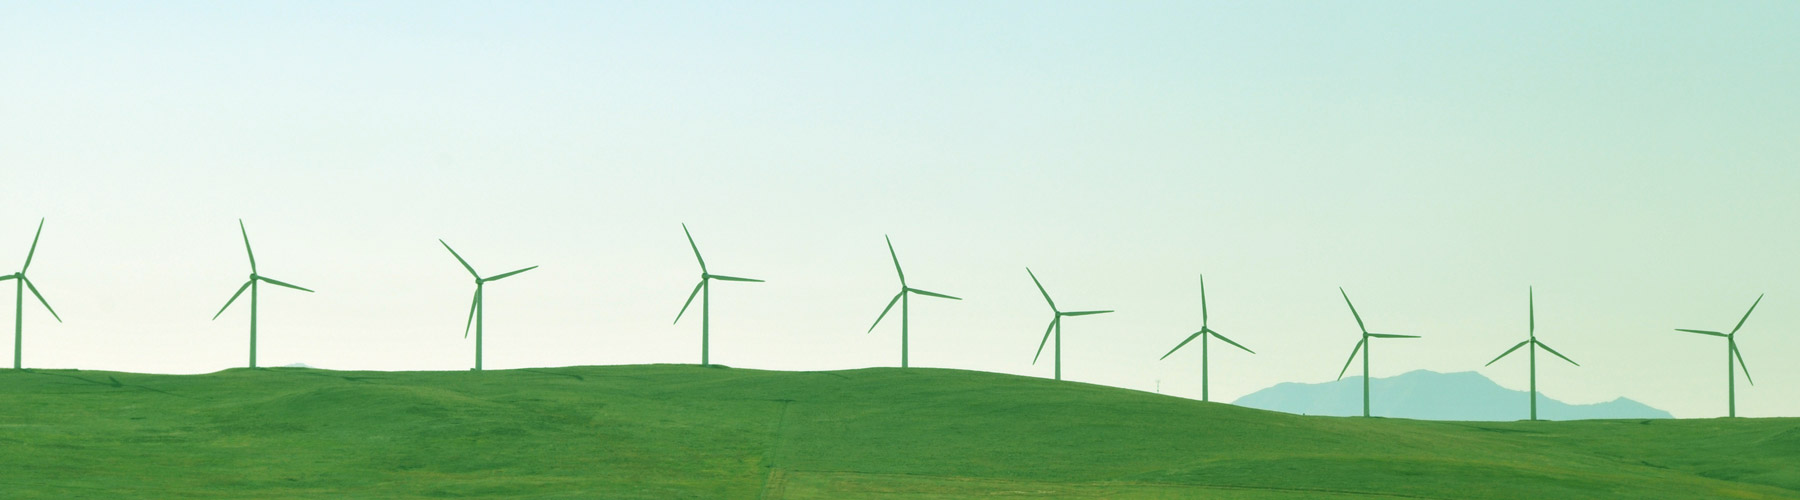 A windmill farm on green grassy hills.